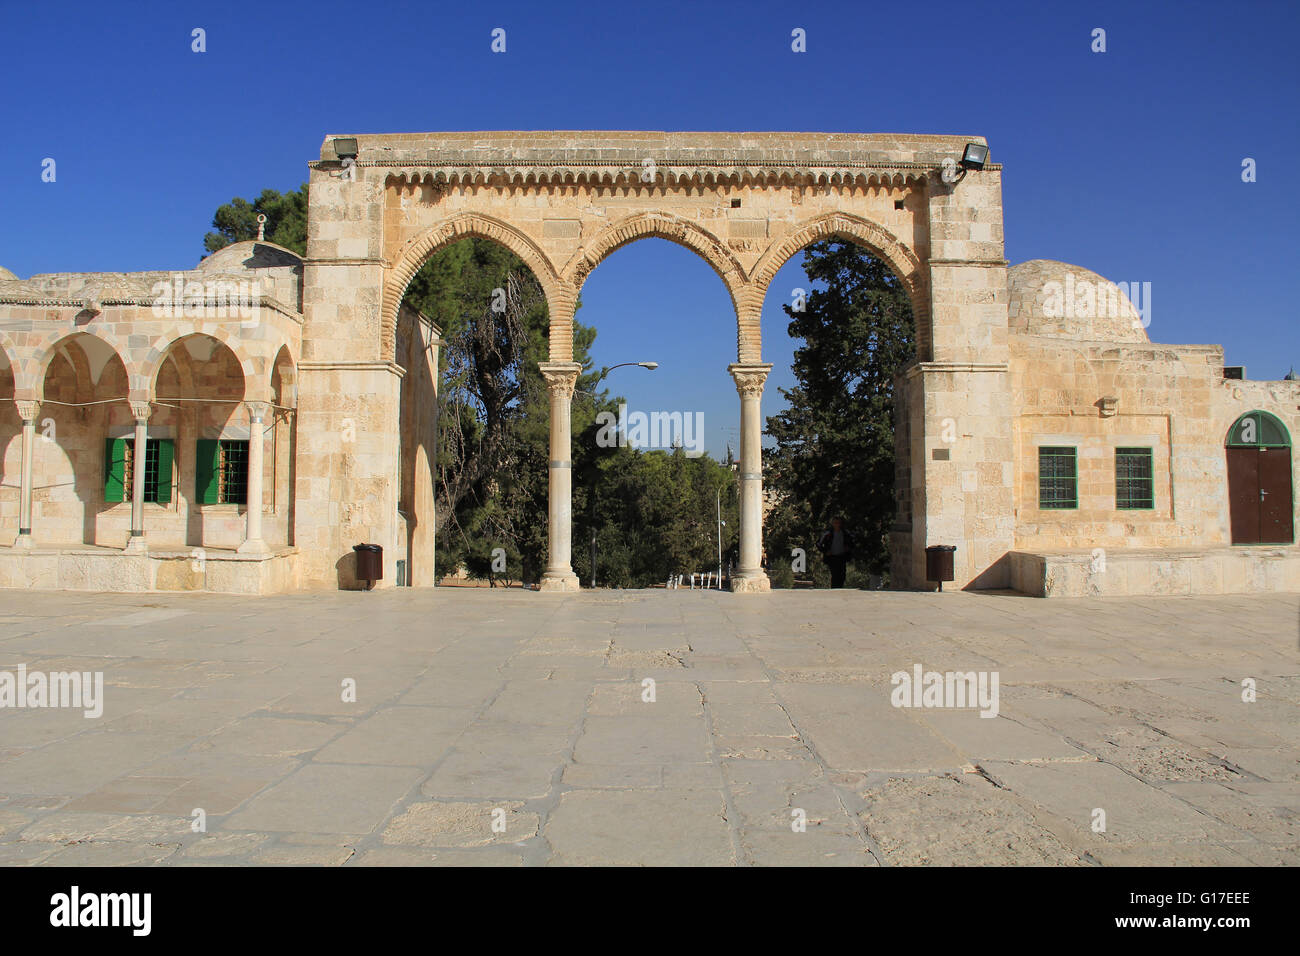 Colonnade arqueado y pequeño edificio junto a la plaza en el Monte del Templo en Jerusalén, Israel. Foto de stock